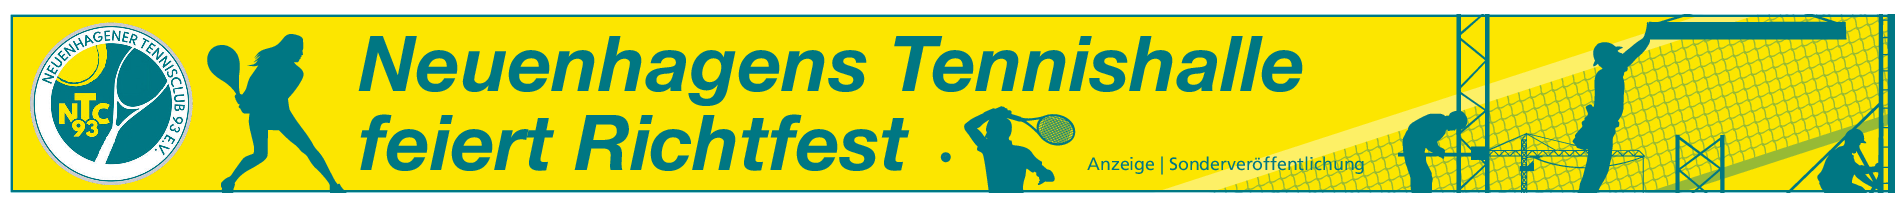 Tennishalle in Neuenhagen: Erster Aufschlag am 6. Dezember